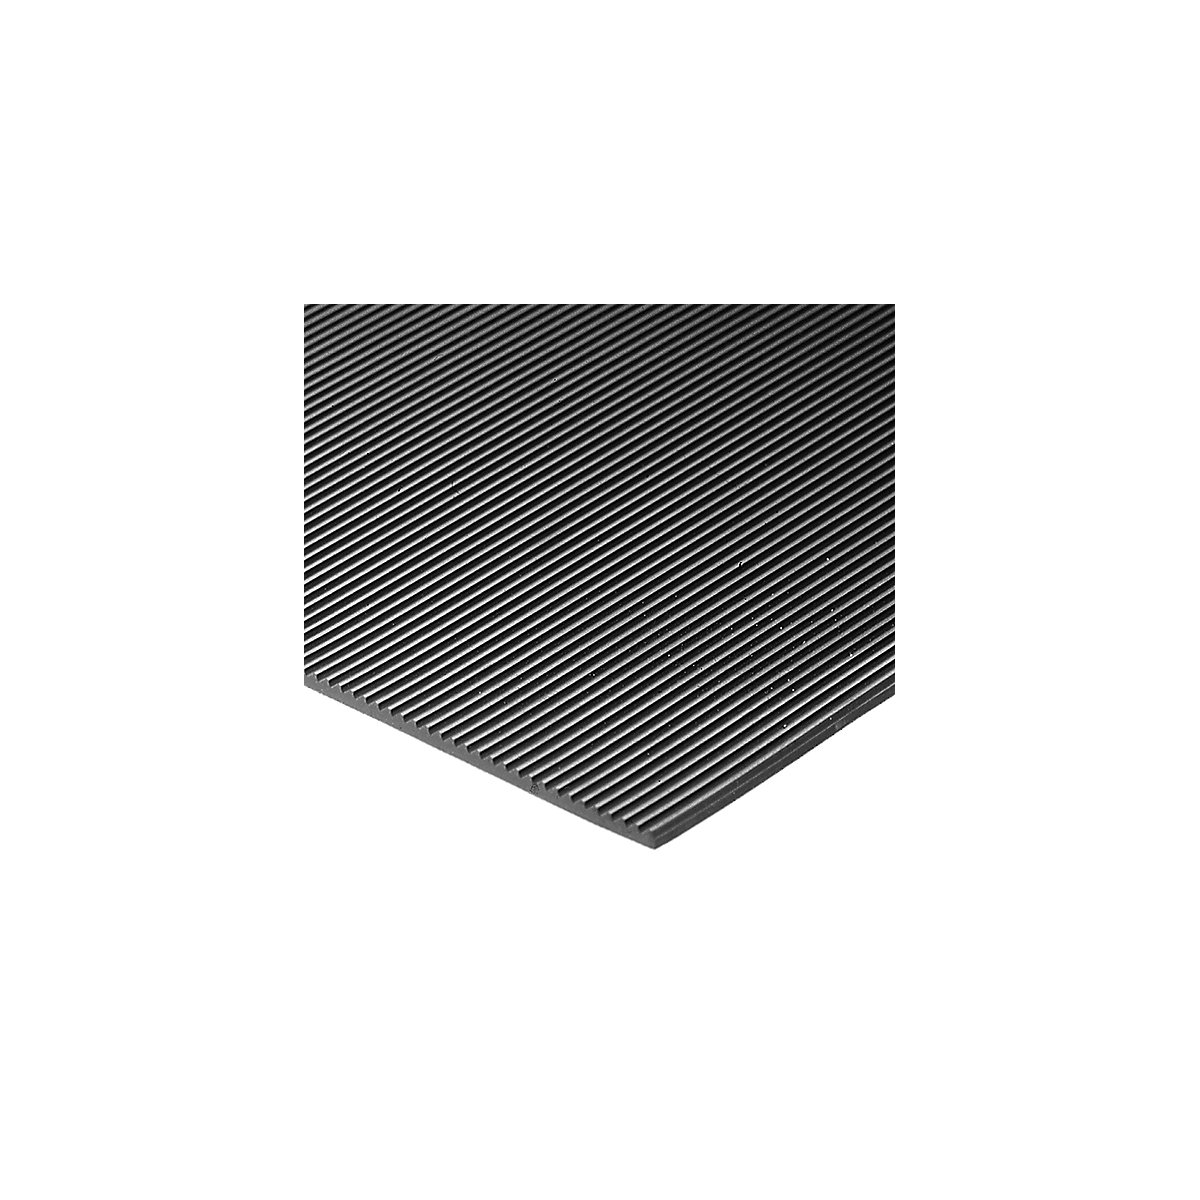 COBArib shelf and workbench matting – COBA